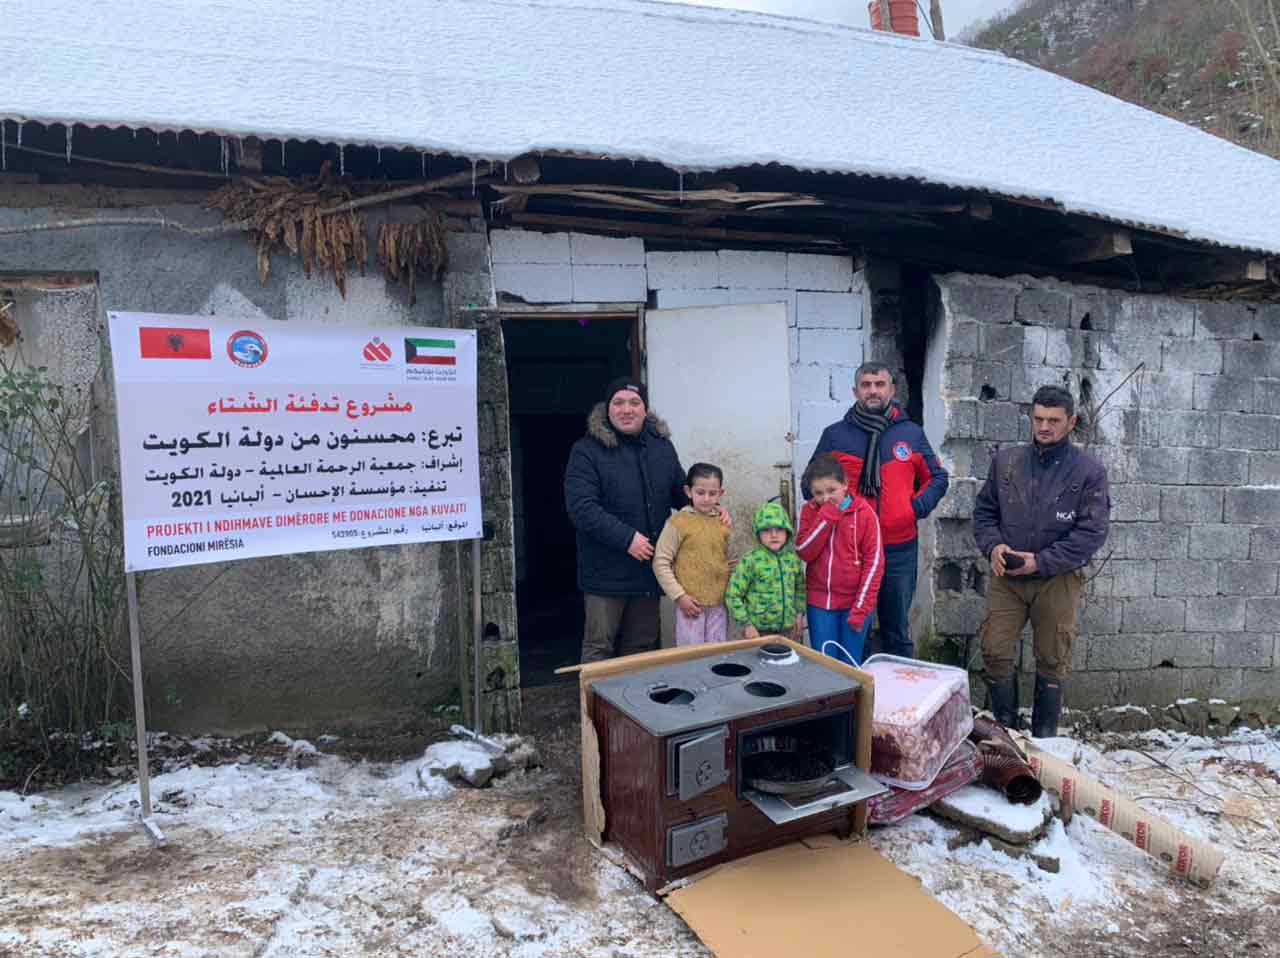 "الرحمة العالمية" : 550 أسرة استفادت من حملات تدفئة الشتاء في دول البلقان